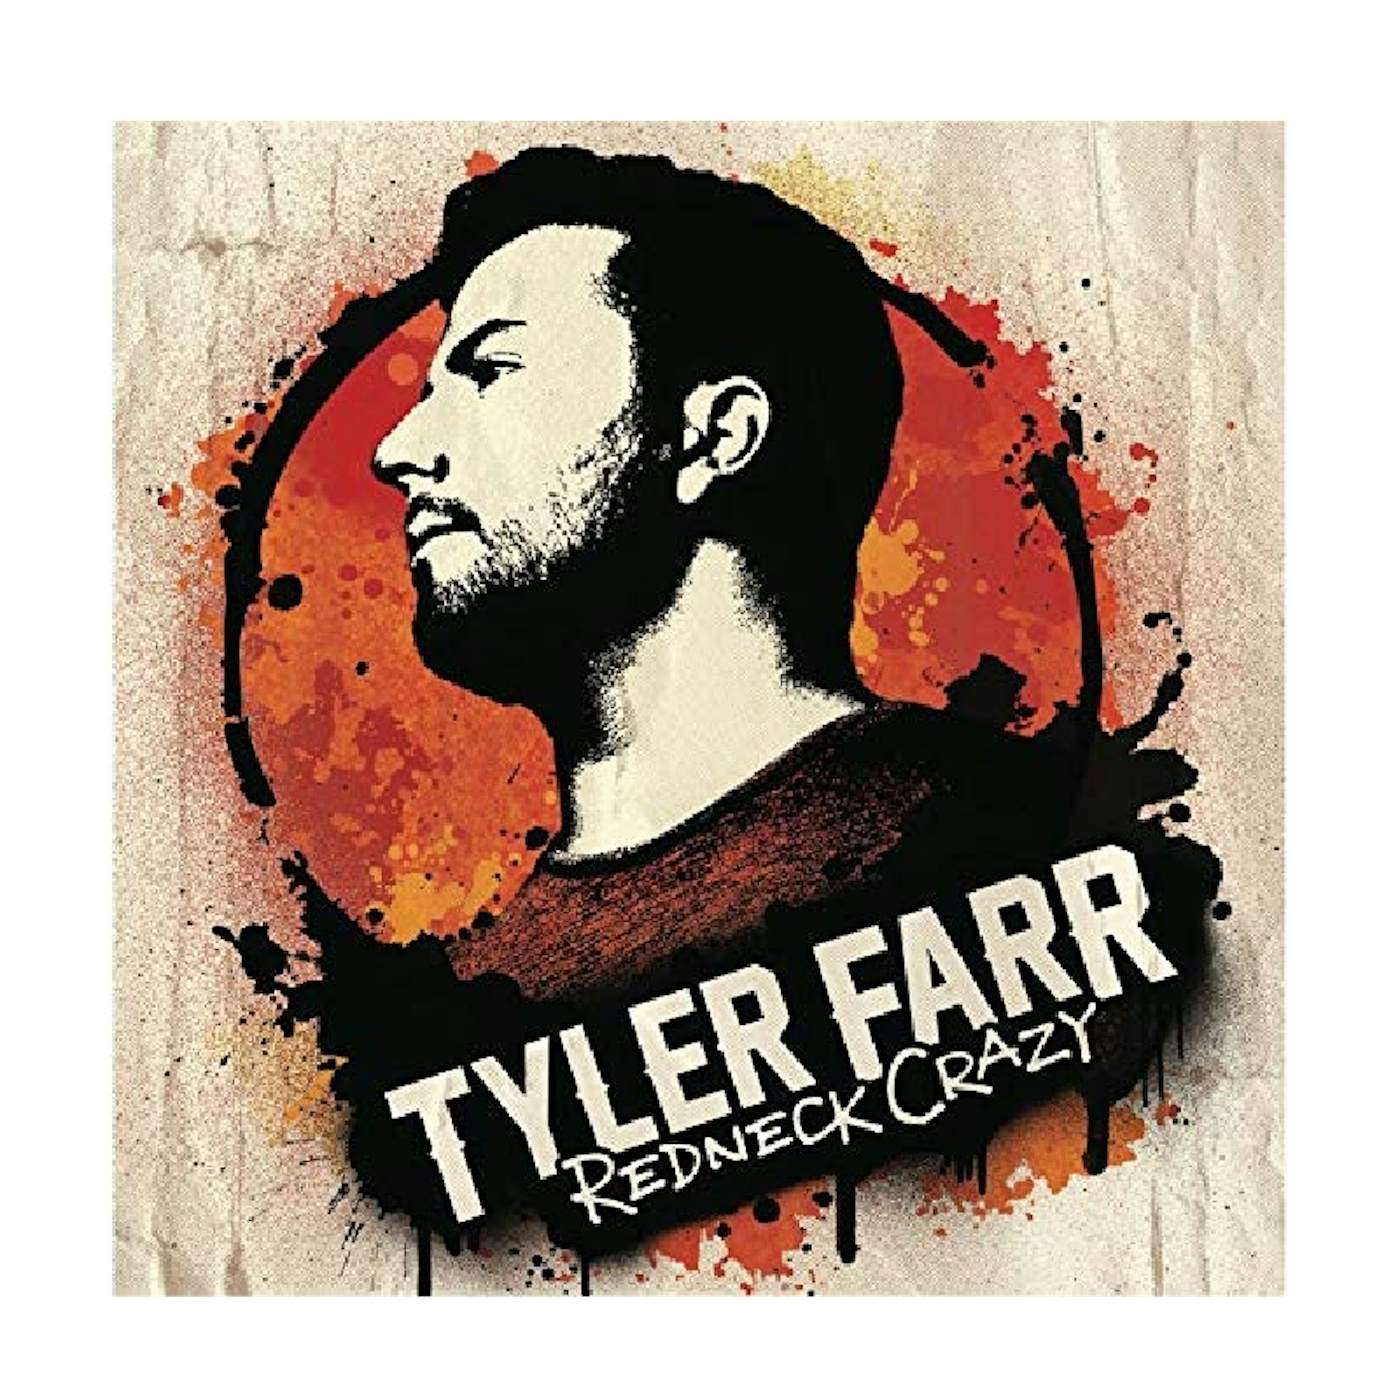 Tyler Farr CD- Redneck Crazy